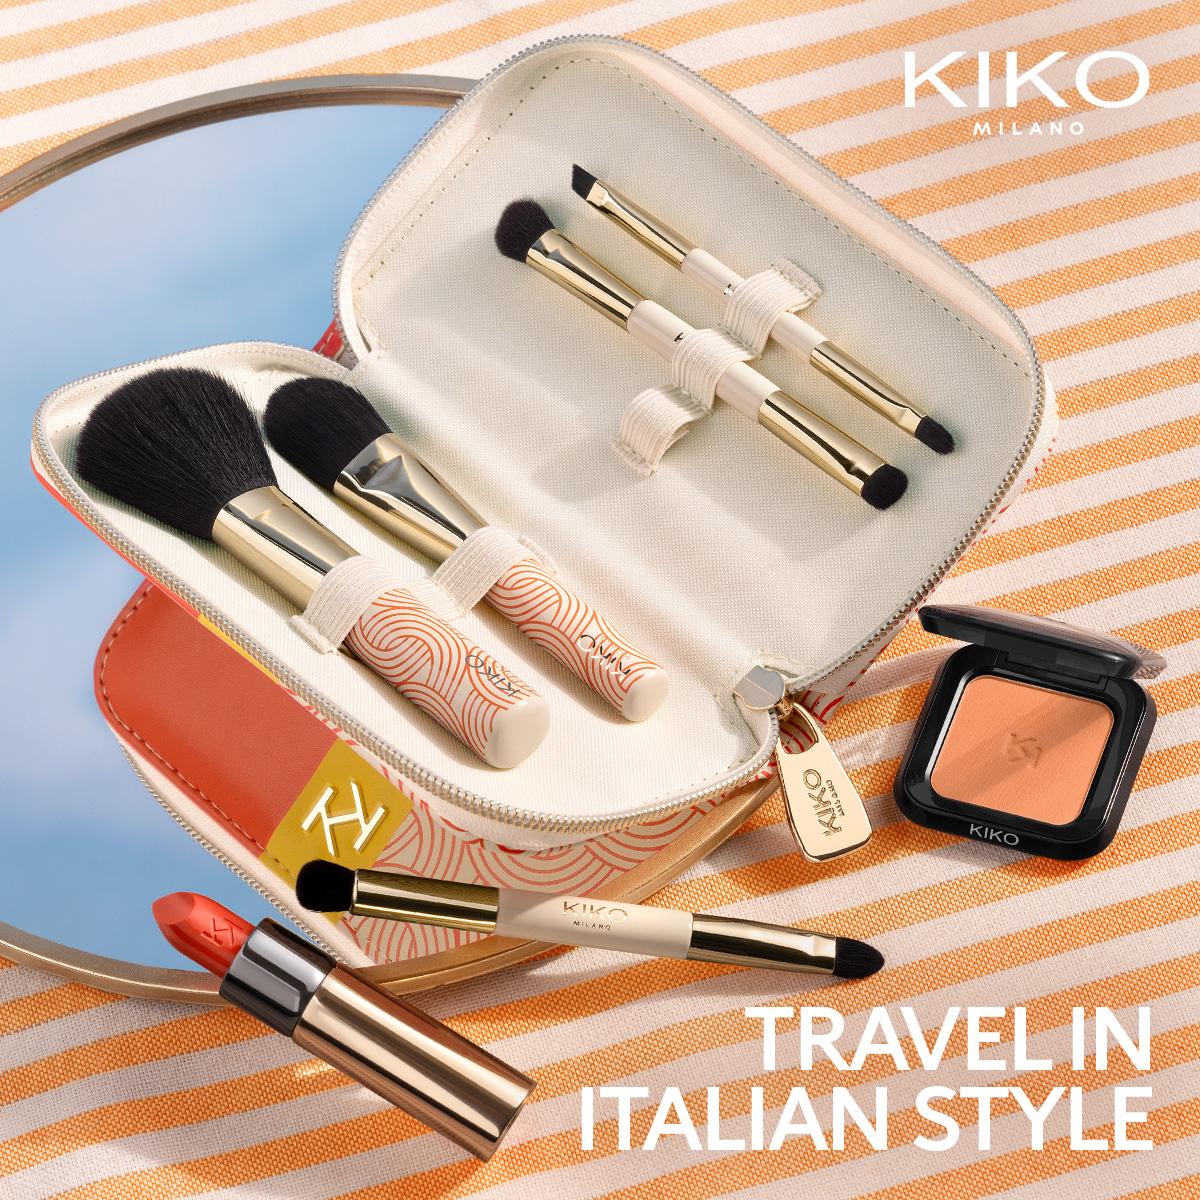 Nuova collezione KIKO Milano: Travel in Italian Style